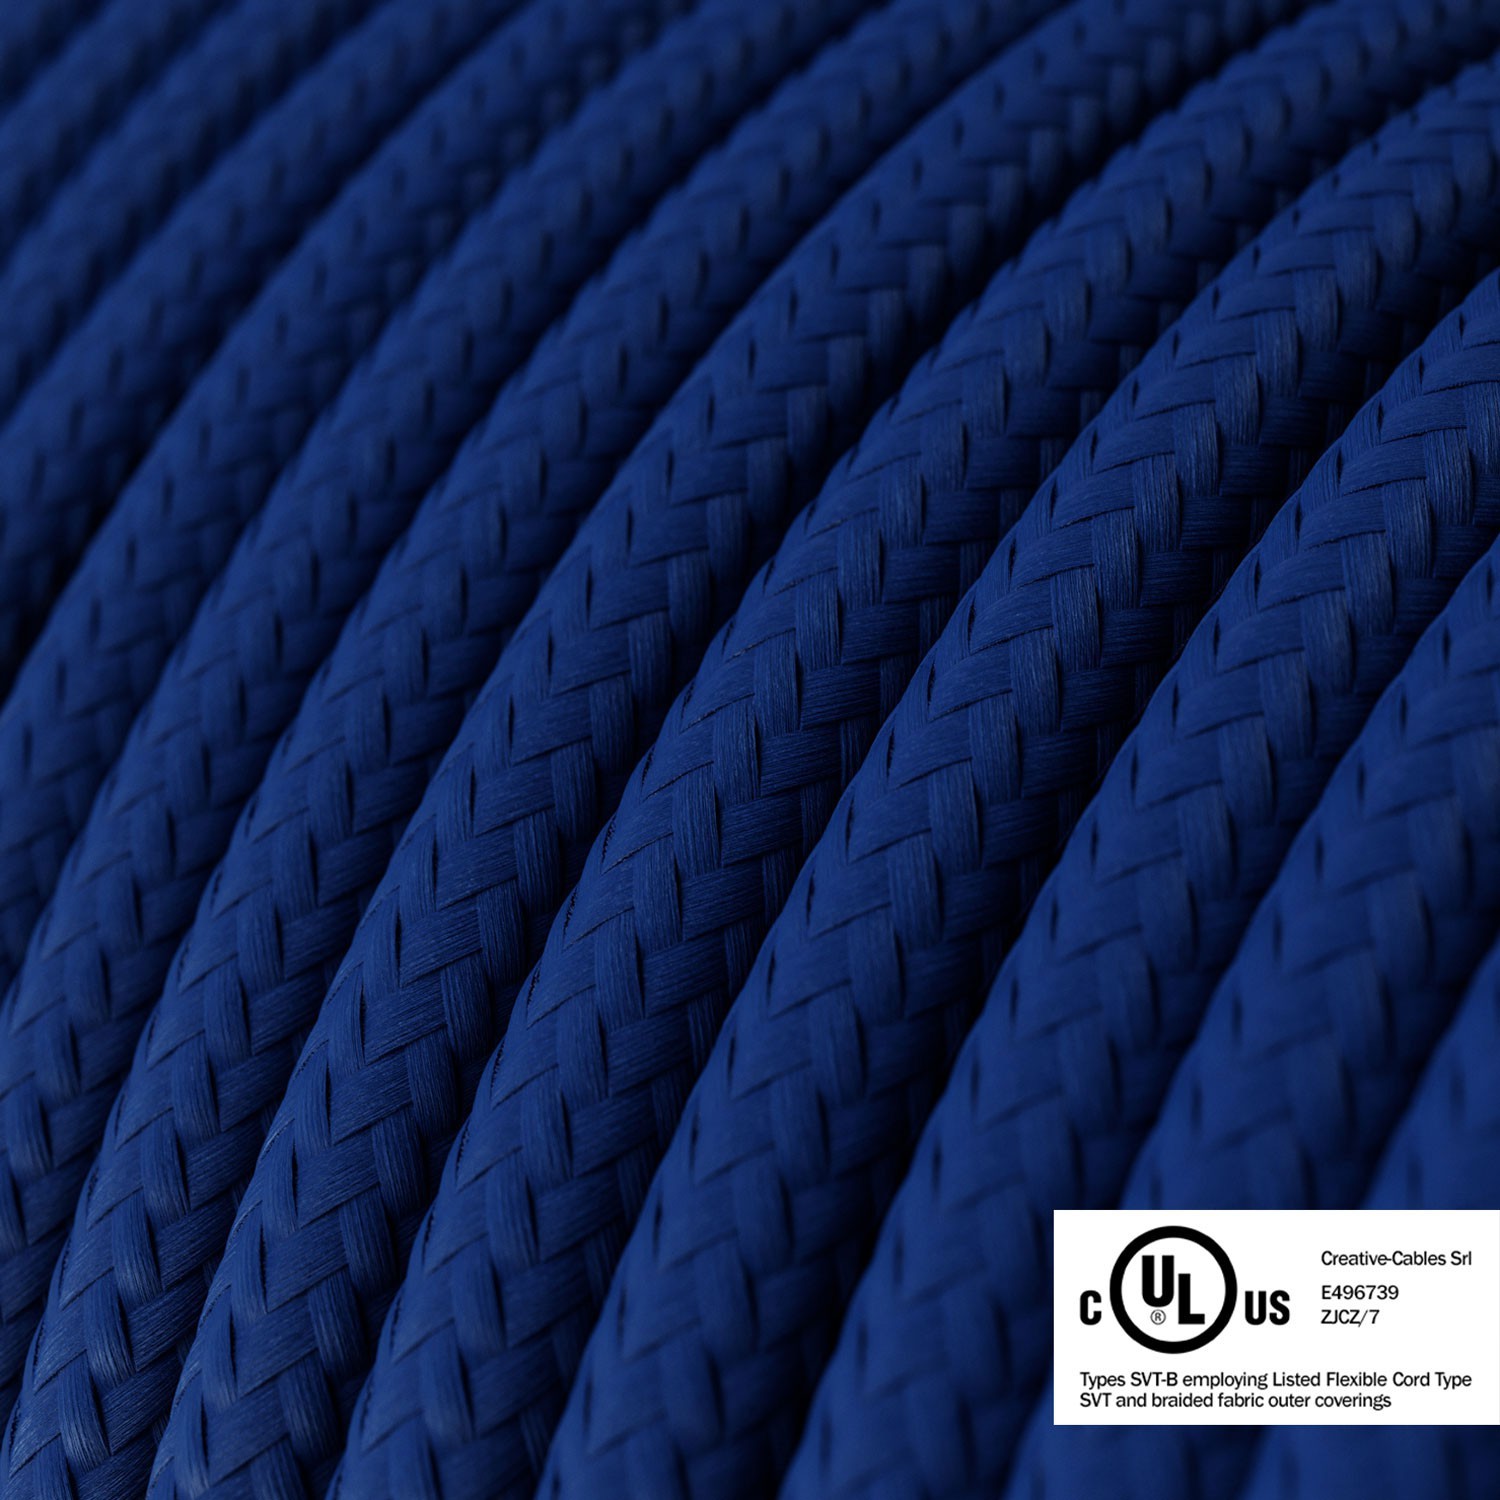 Cable eléctrico redondo en bobina de 45.72 mts (150 pies) RM12 Efecto Seda Azul - Homologado UL